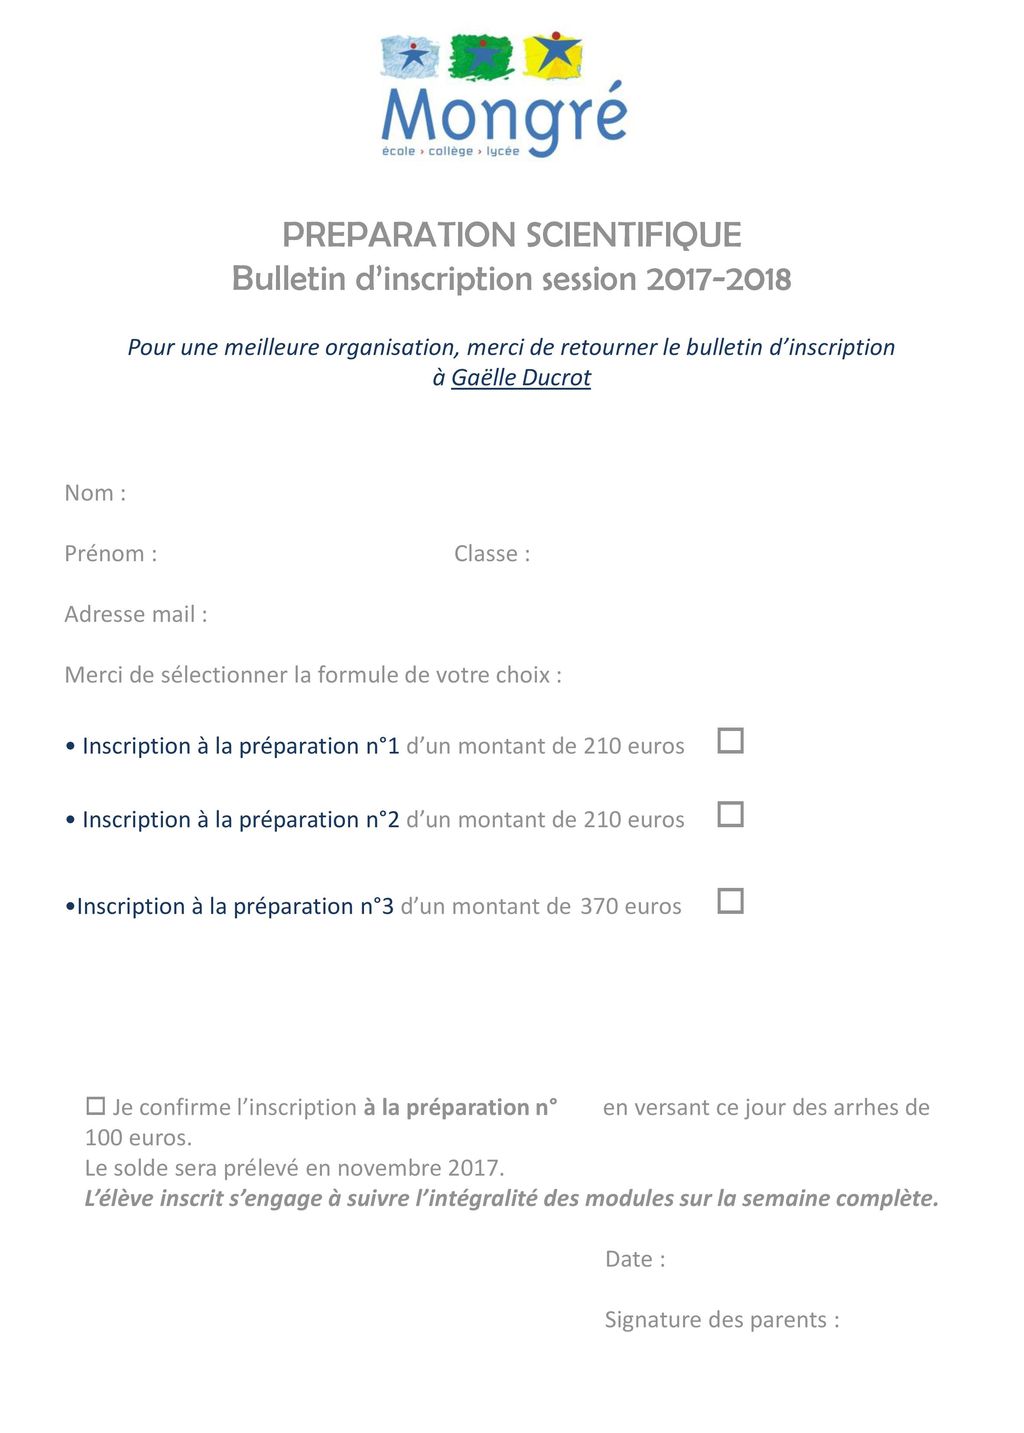 PREPARATION SCIENTIFIQUE Bulletin d’inscription session